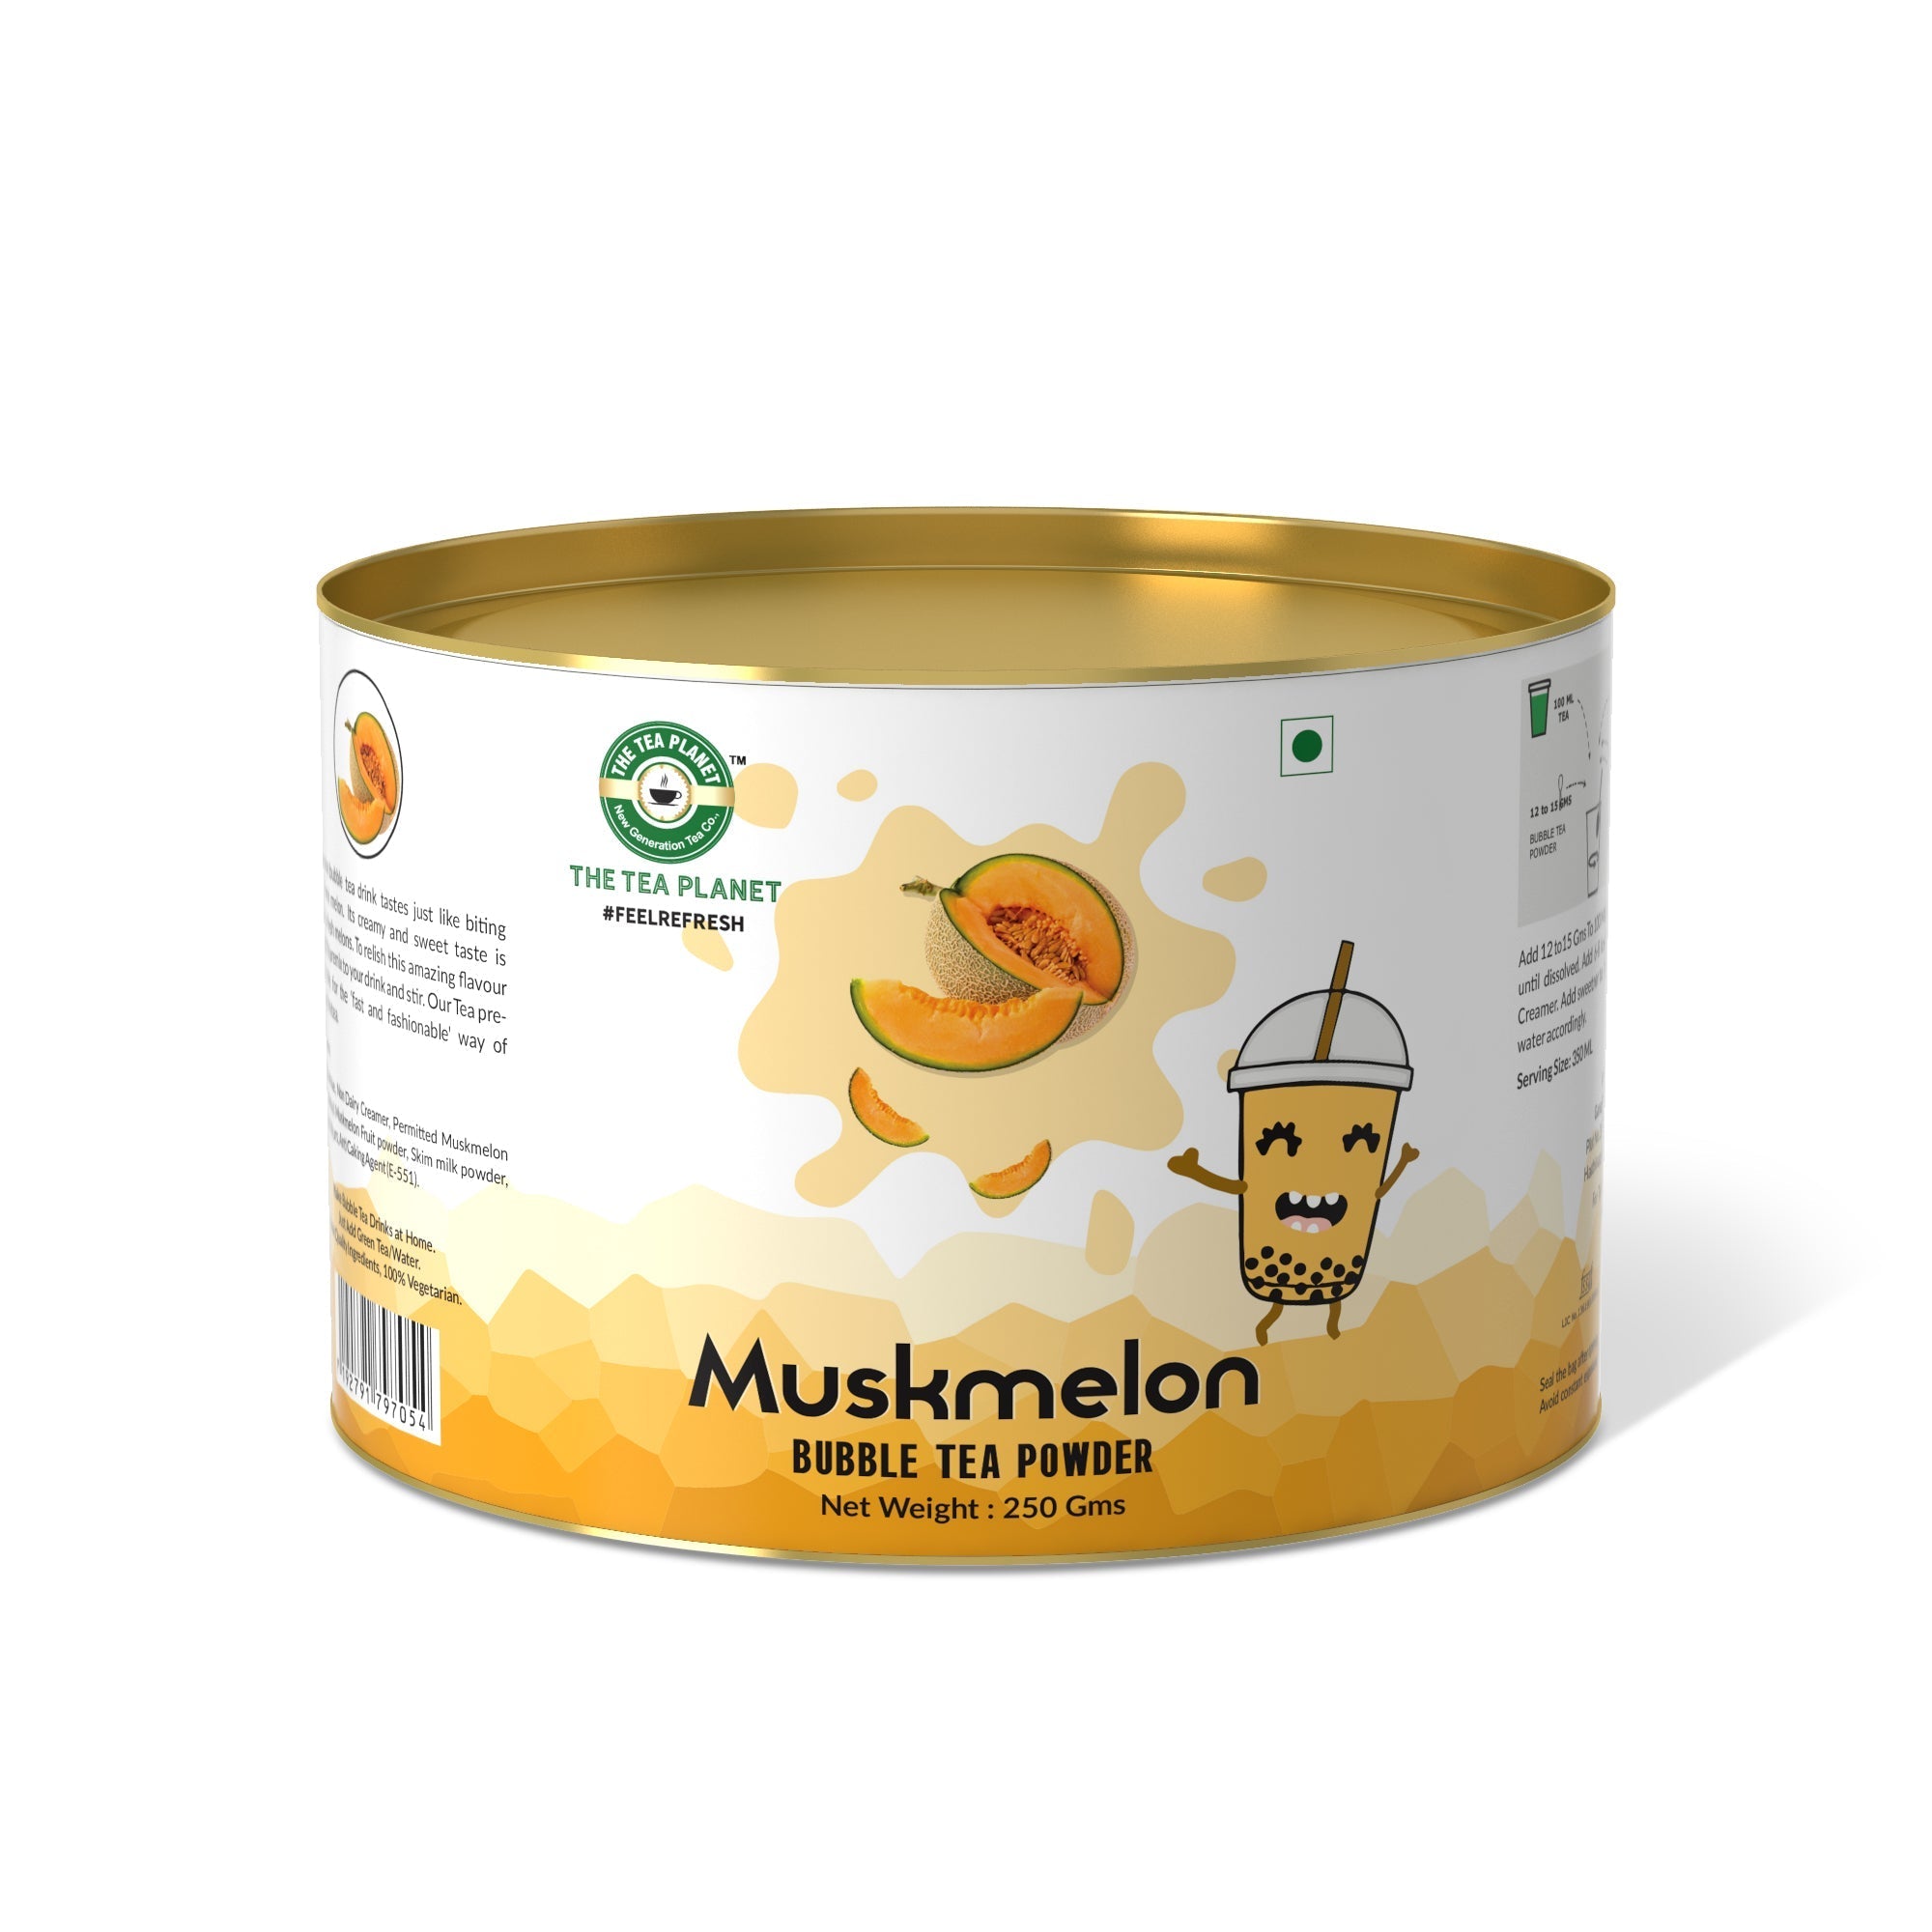 Muskmelon Bubble Tea Premix - 800 gms